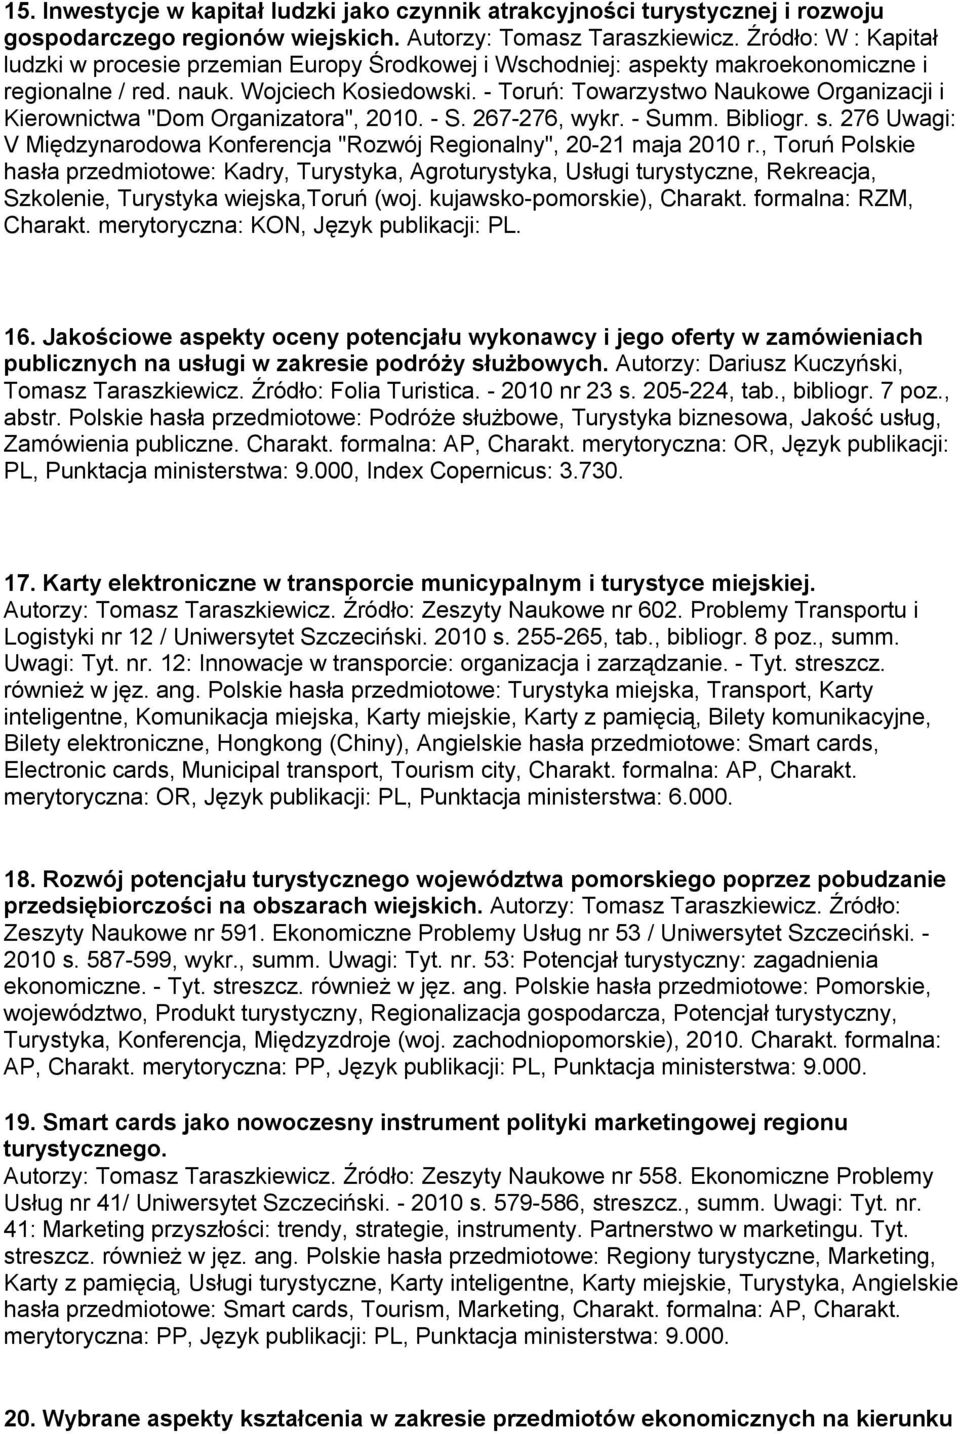 - Toruń: Towarzystwo Naukowe Organizacji i Kierownictwa "Dom Organizatora", 2010. - S. 267-276, wykr. - Summ. Bibliogr. s.